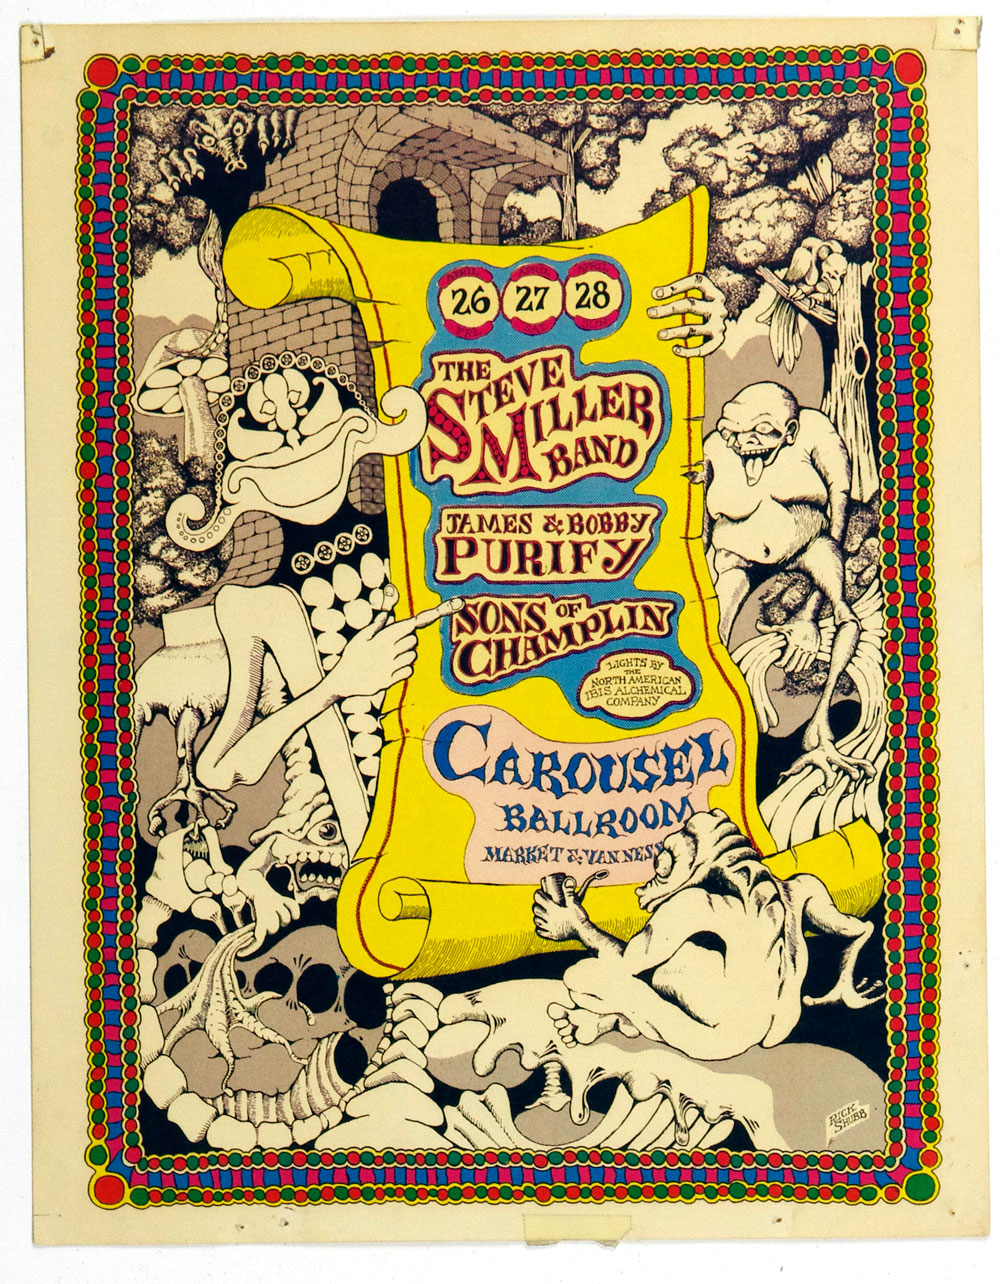 Carousel Ballroom Poster 1968 Apr 26 Steve Miller AOR 2.168 